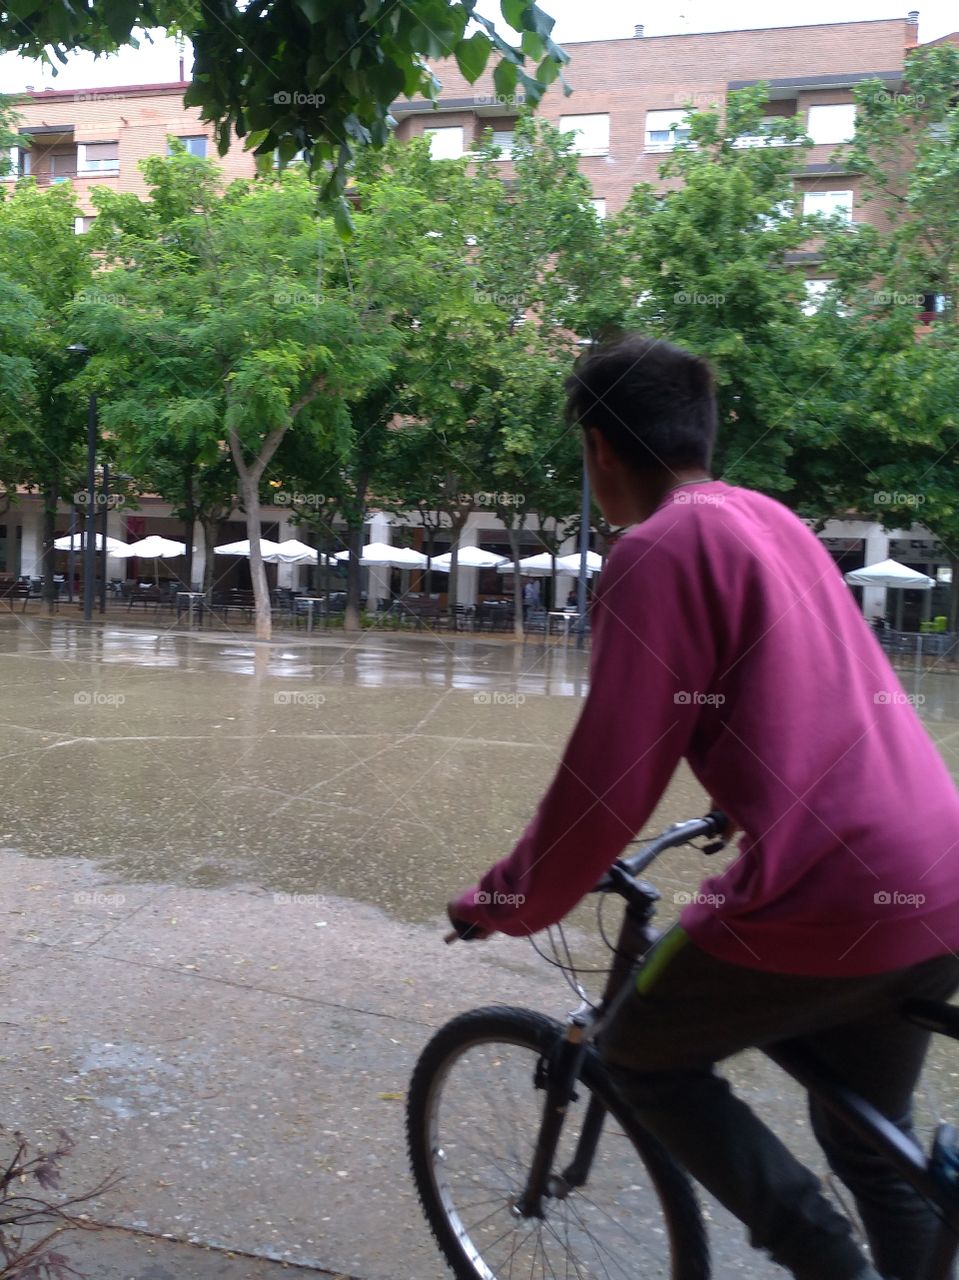 Un joven pasa con su bicicleta por una plaza